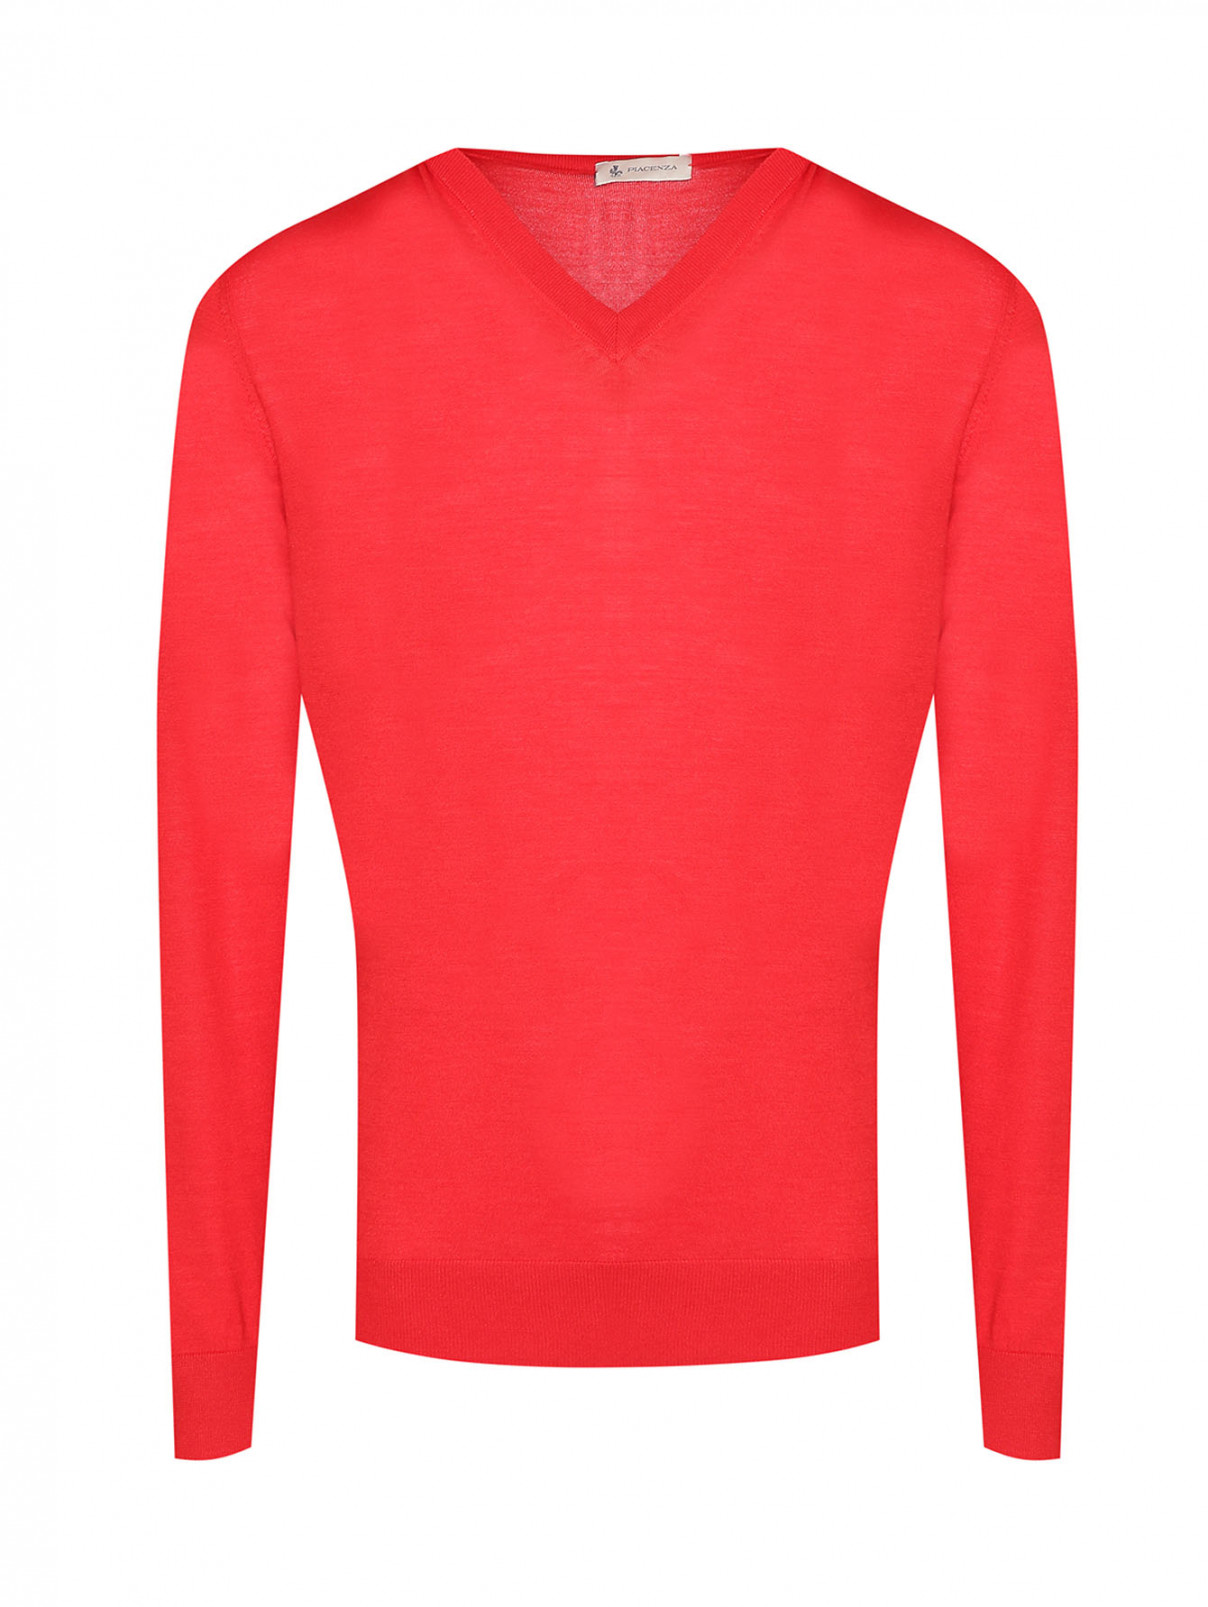 Джемпер из шерсти и шелка с V-образным вырезом Piacenza Cashmere  –  Общий вид  – Цвет:  Красный